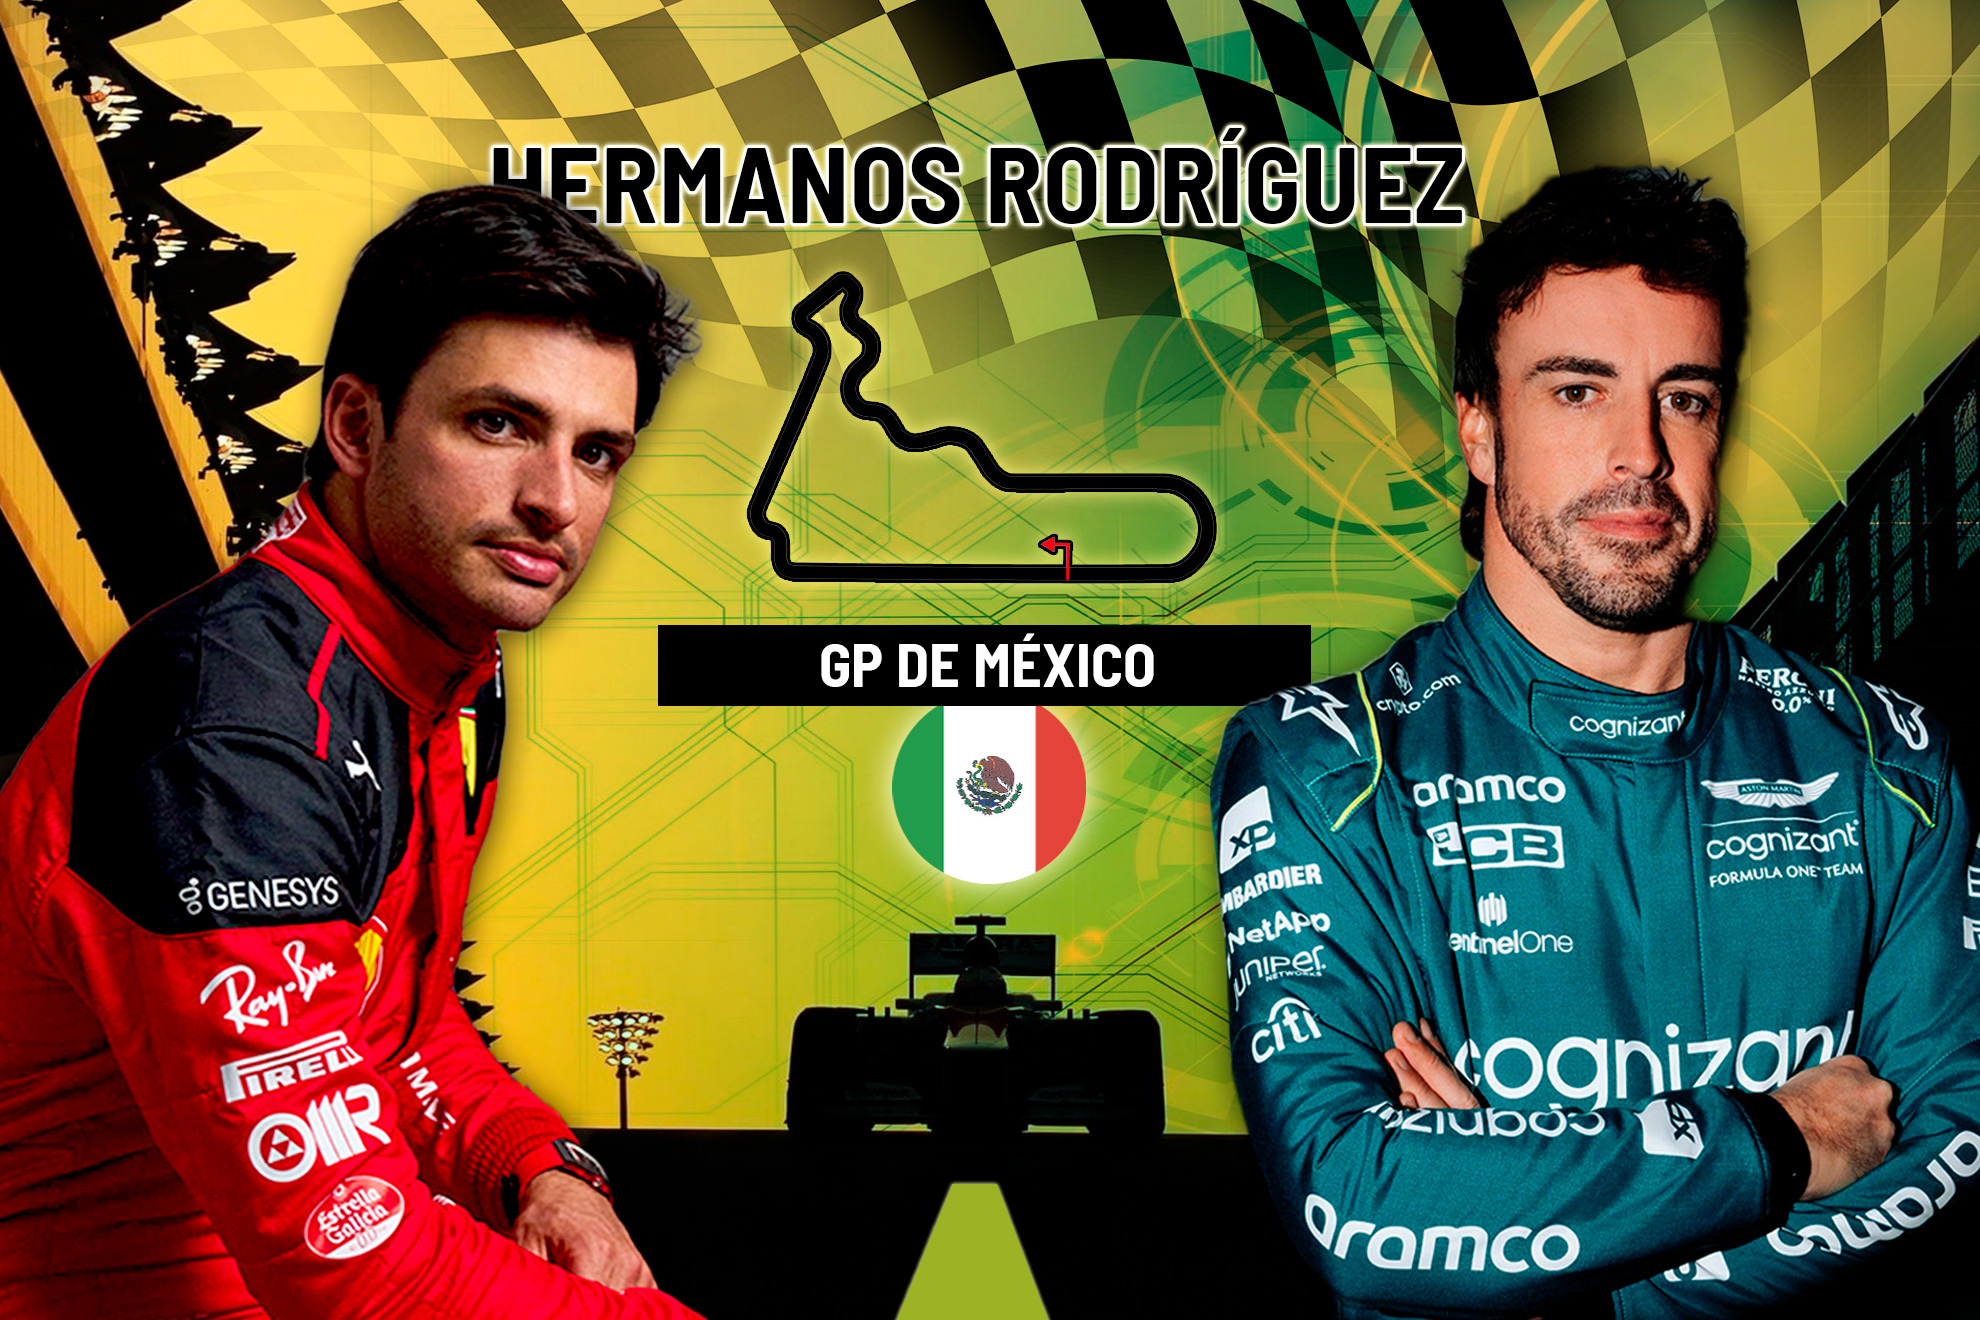 Carrera del GP de Mexico de F1: a qu� hora es, parrilla, canal y d�nde ver hoy en TV y online en directo